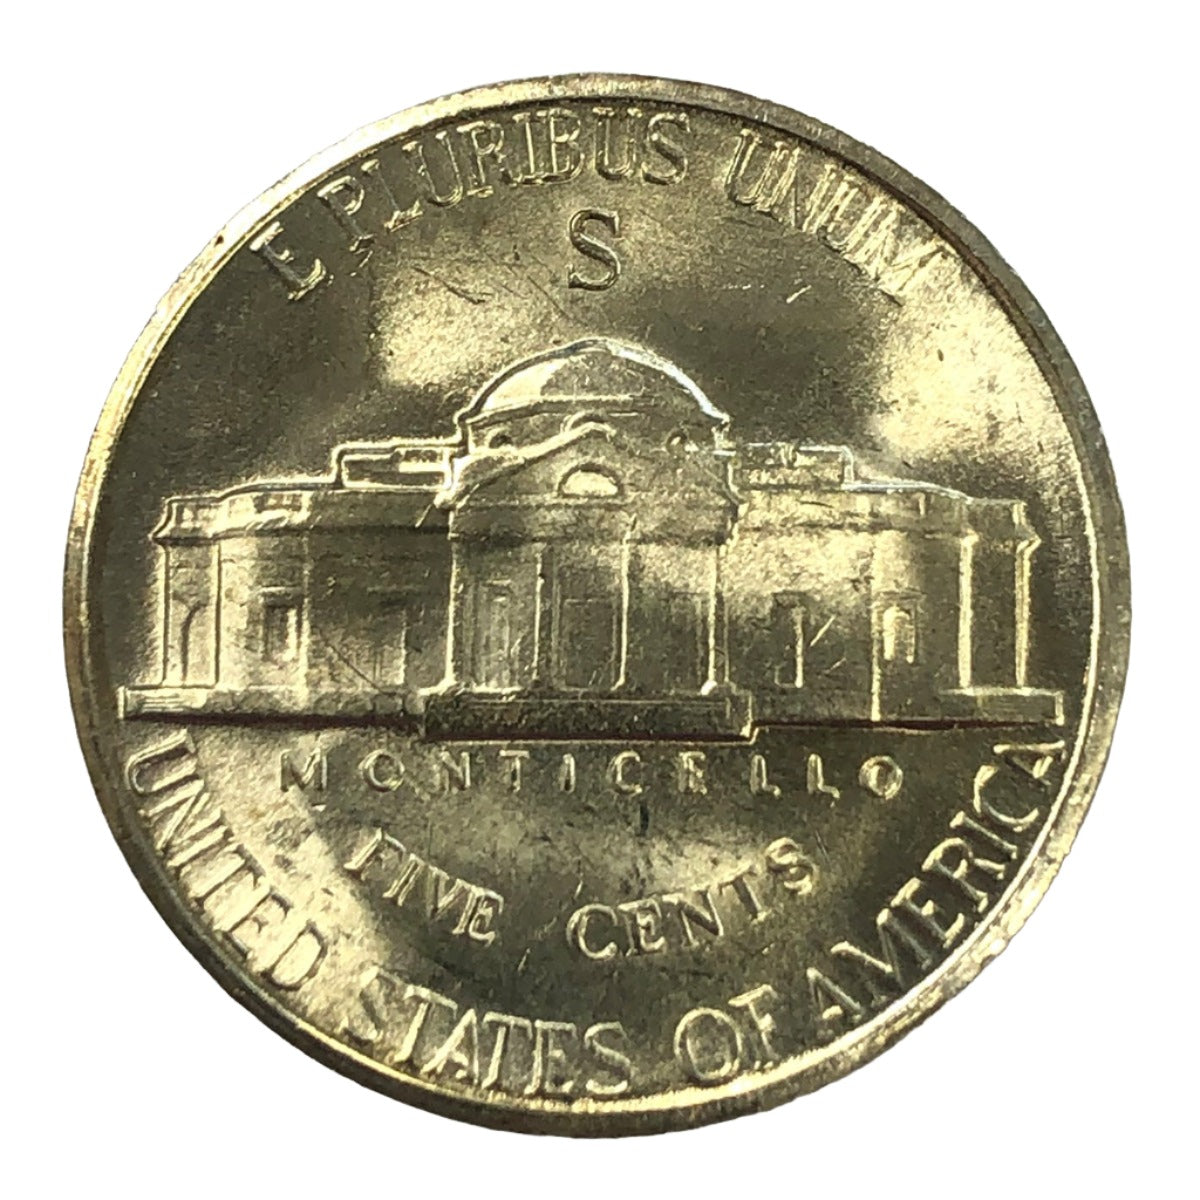 1944-S Jefferson War Nickel (BU)